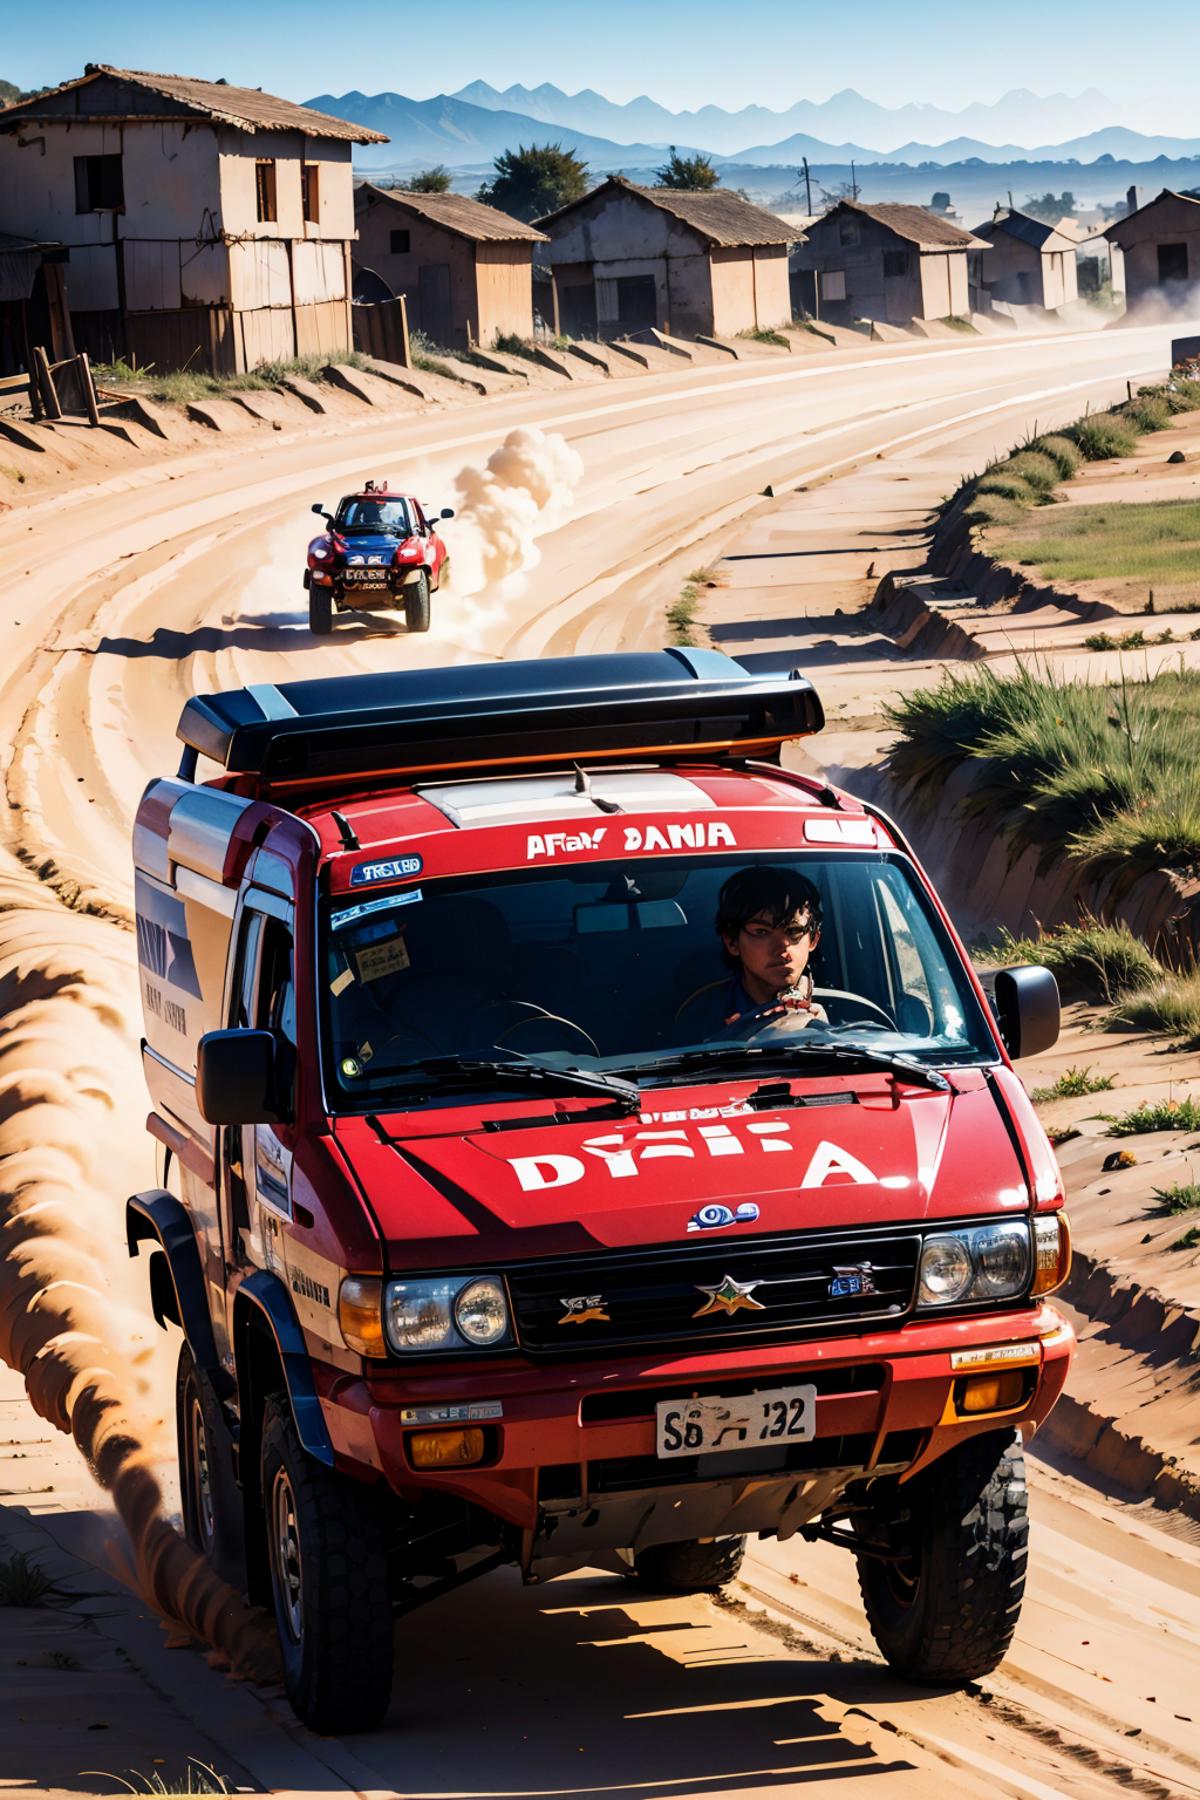 Paris Dakar Rally image by Ggrue